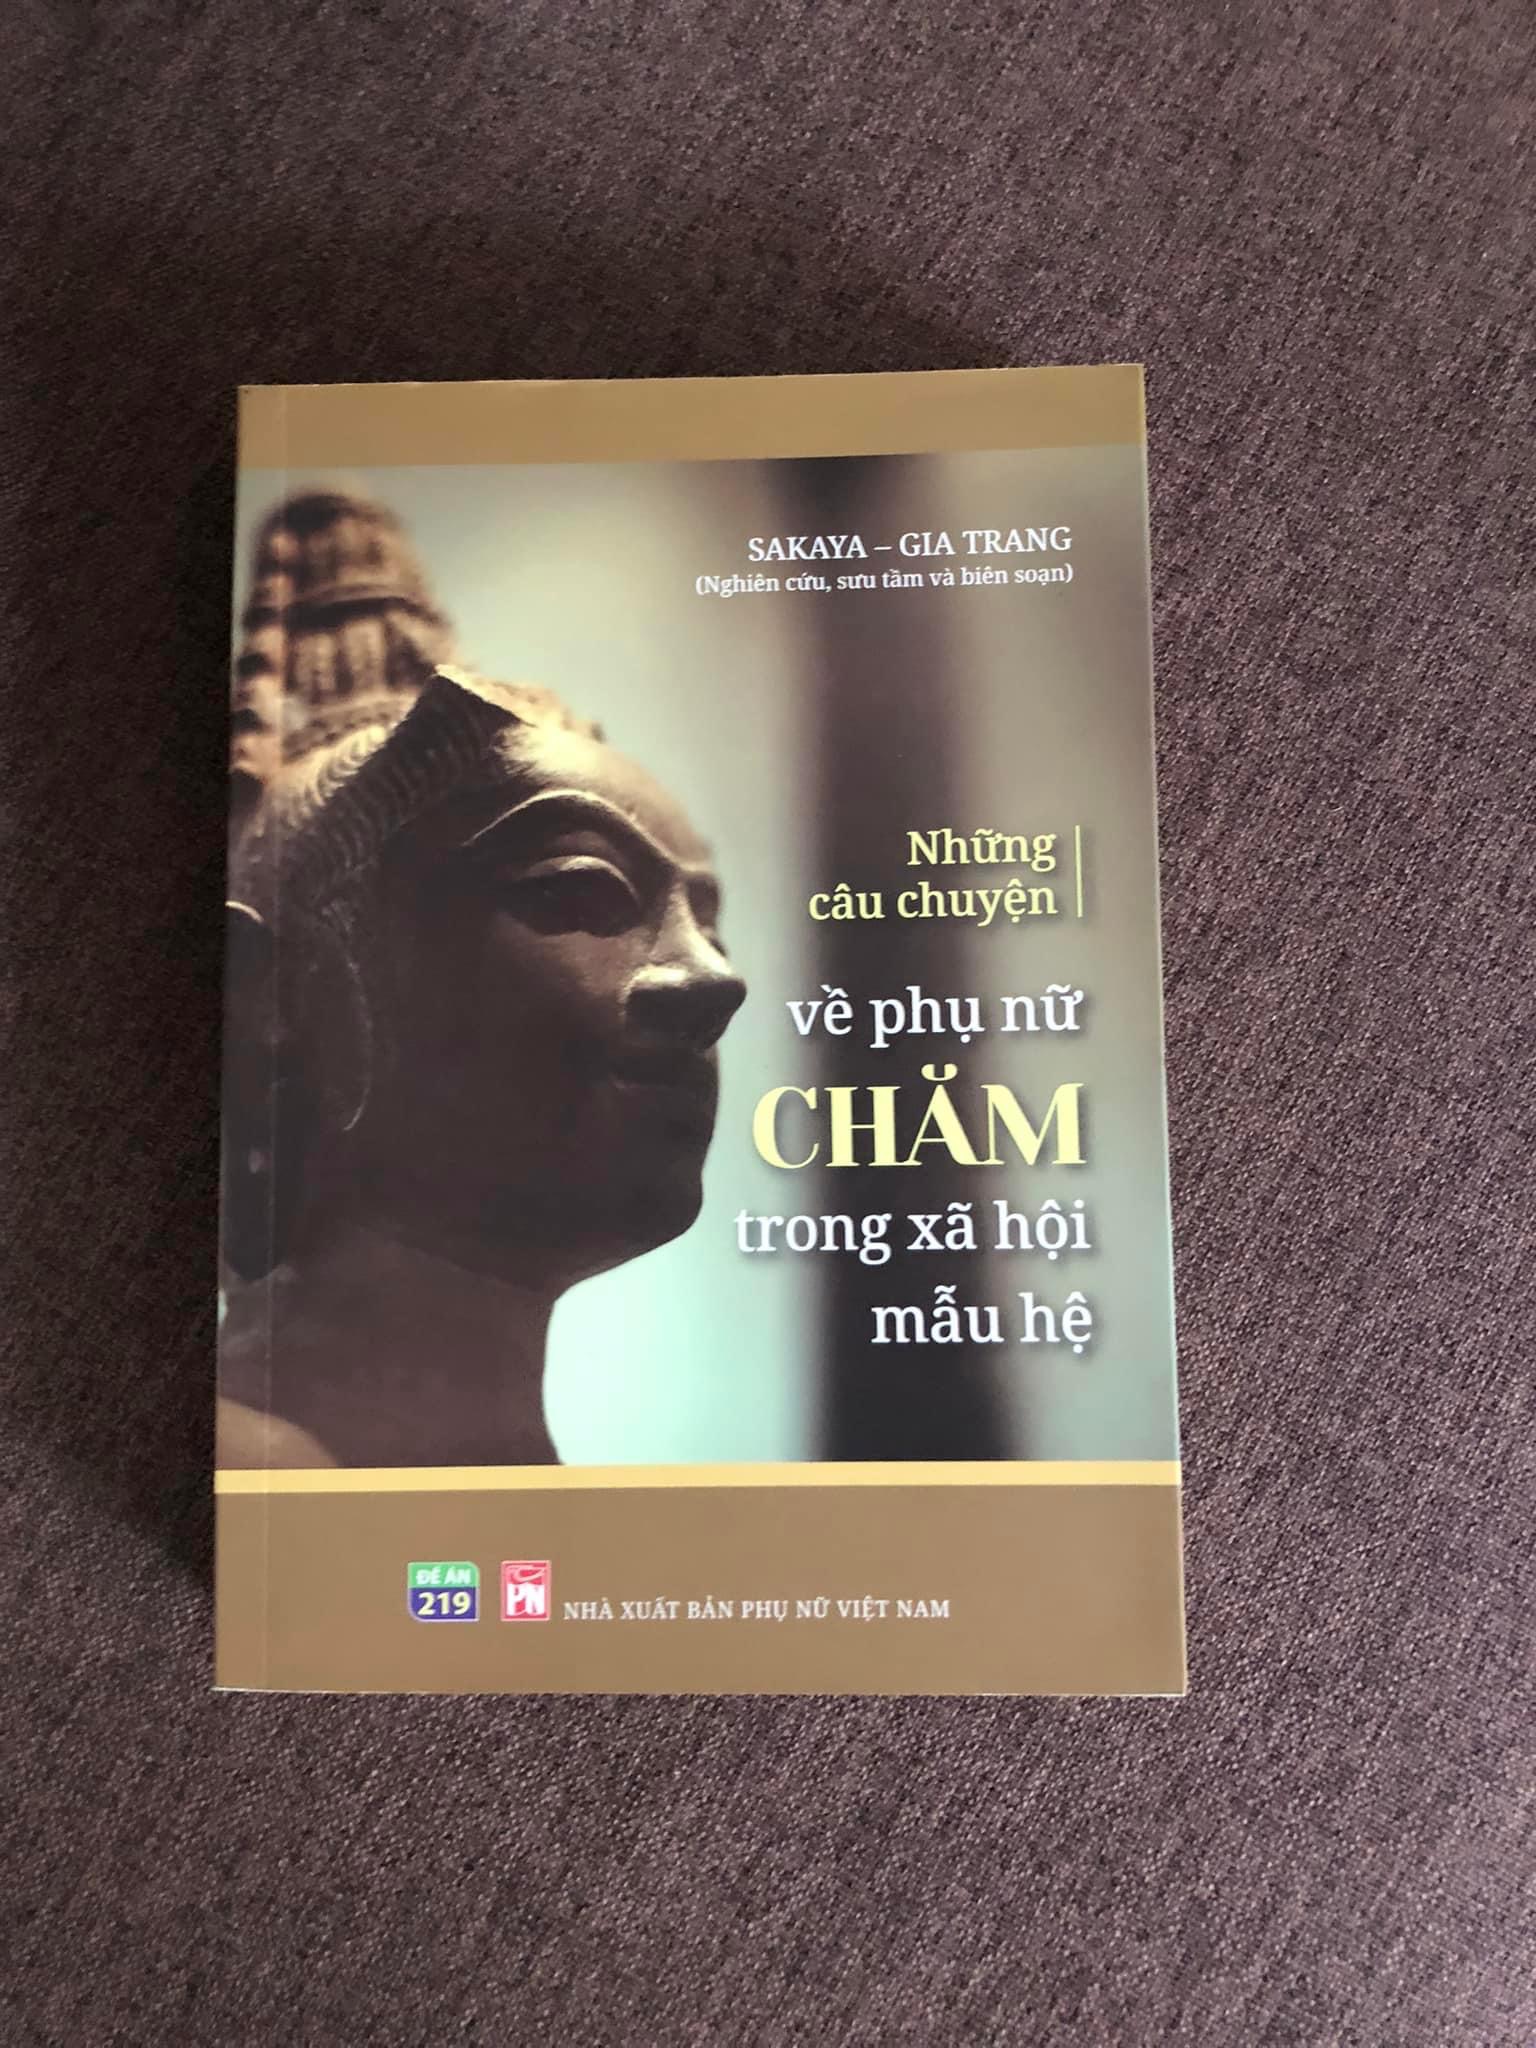 TỦ SÁCH DÂN TỘC - Bộ 3 cuốn: Người Thái ở Việt Nam: Truyền thuyết và Lễ hội + Phụ nữ Êđê trong xã hội mẫu hệ + Những câu chuyện về phụ nữ Chăm trong xã hội mẫu hệ